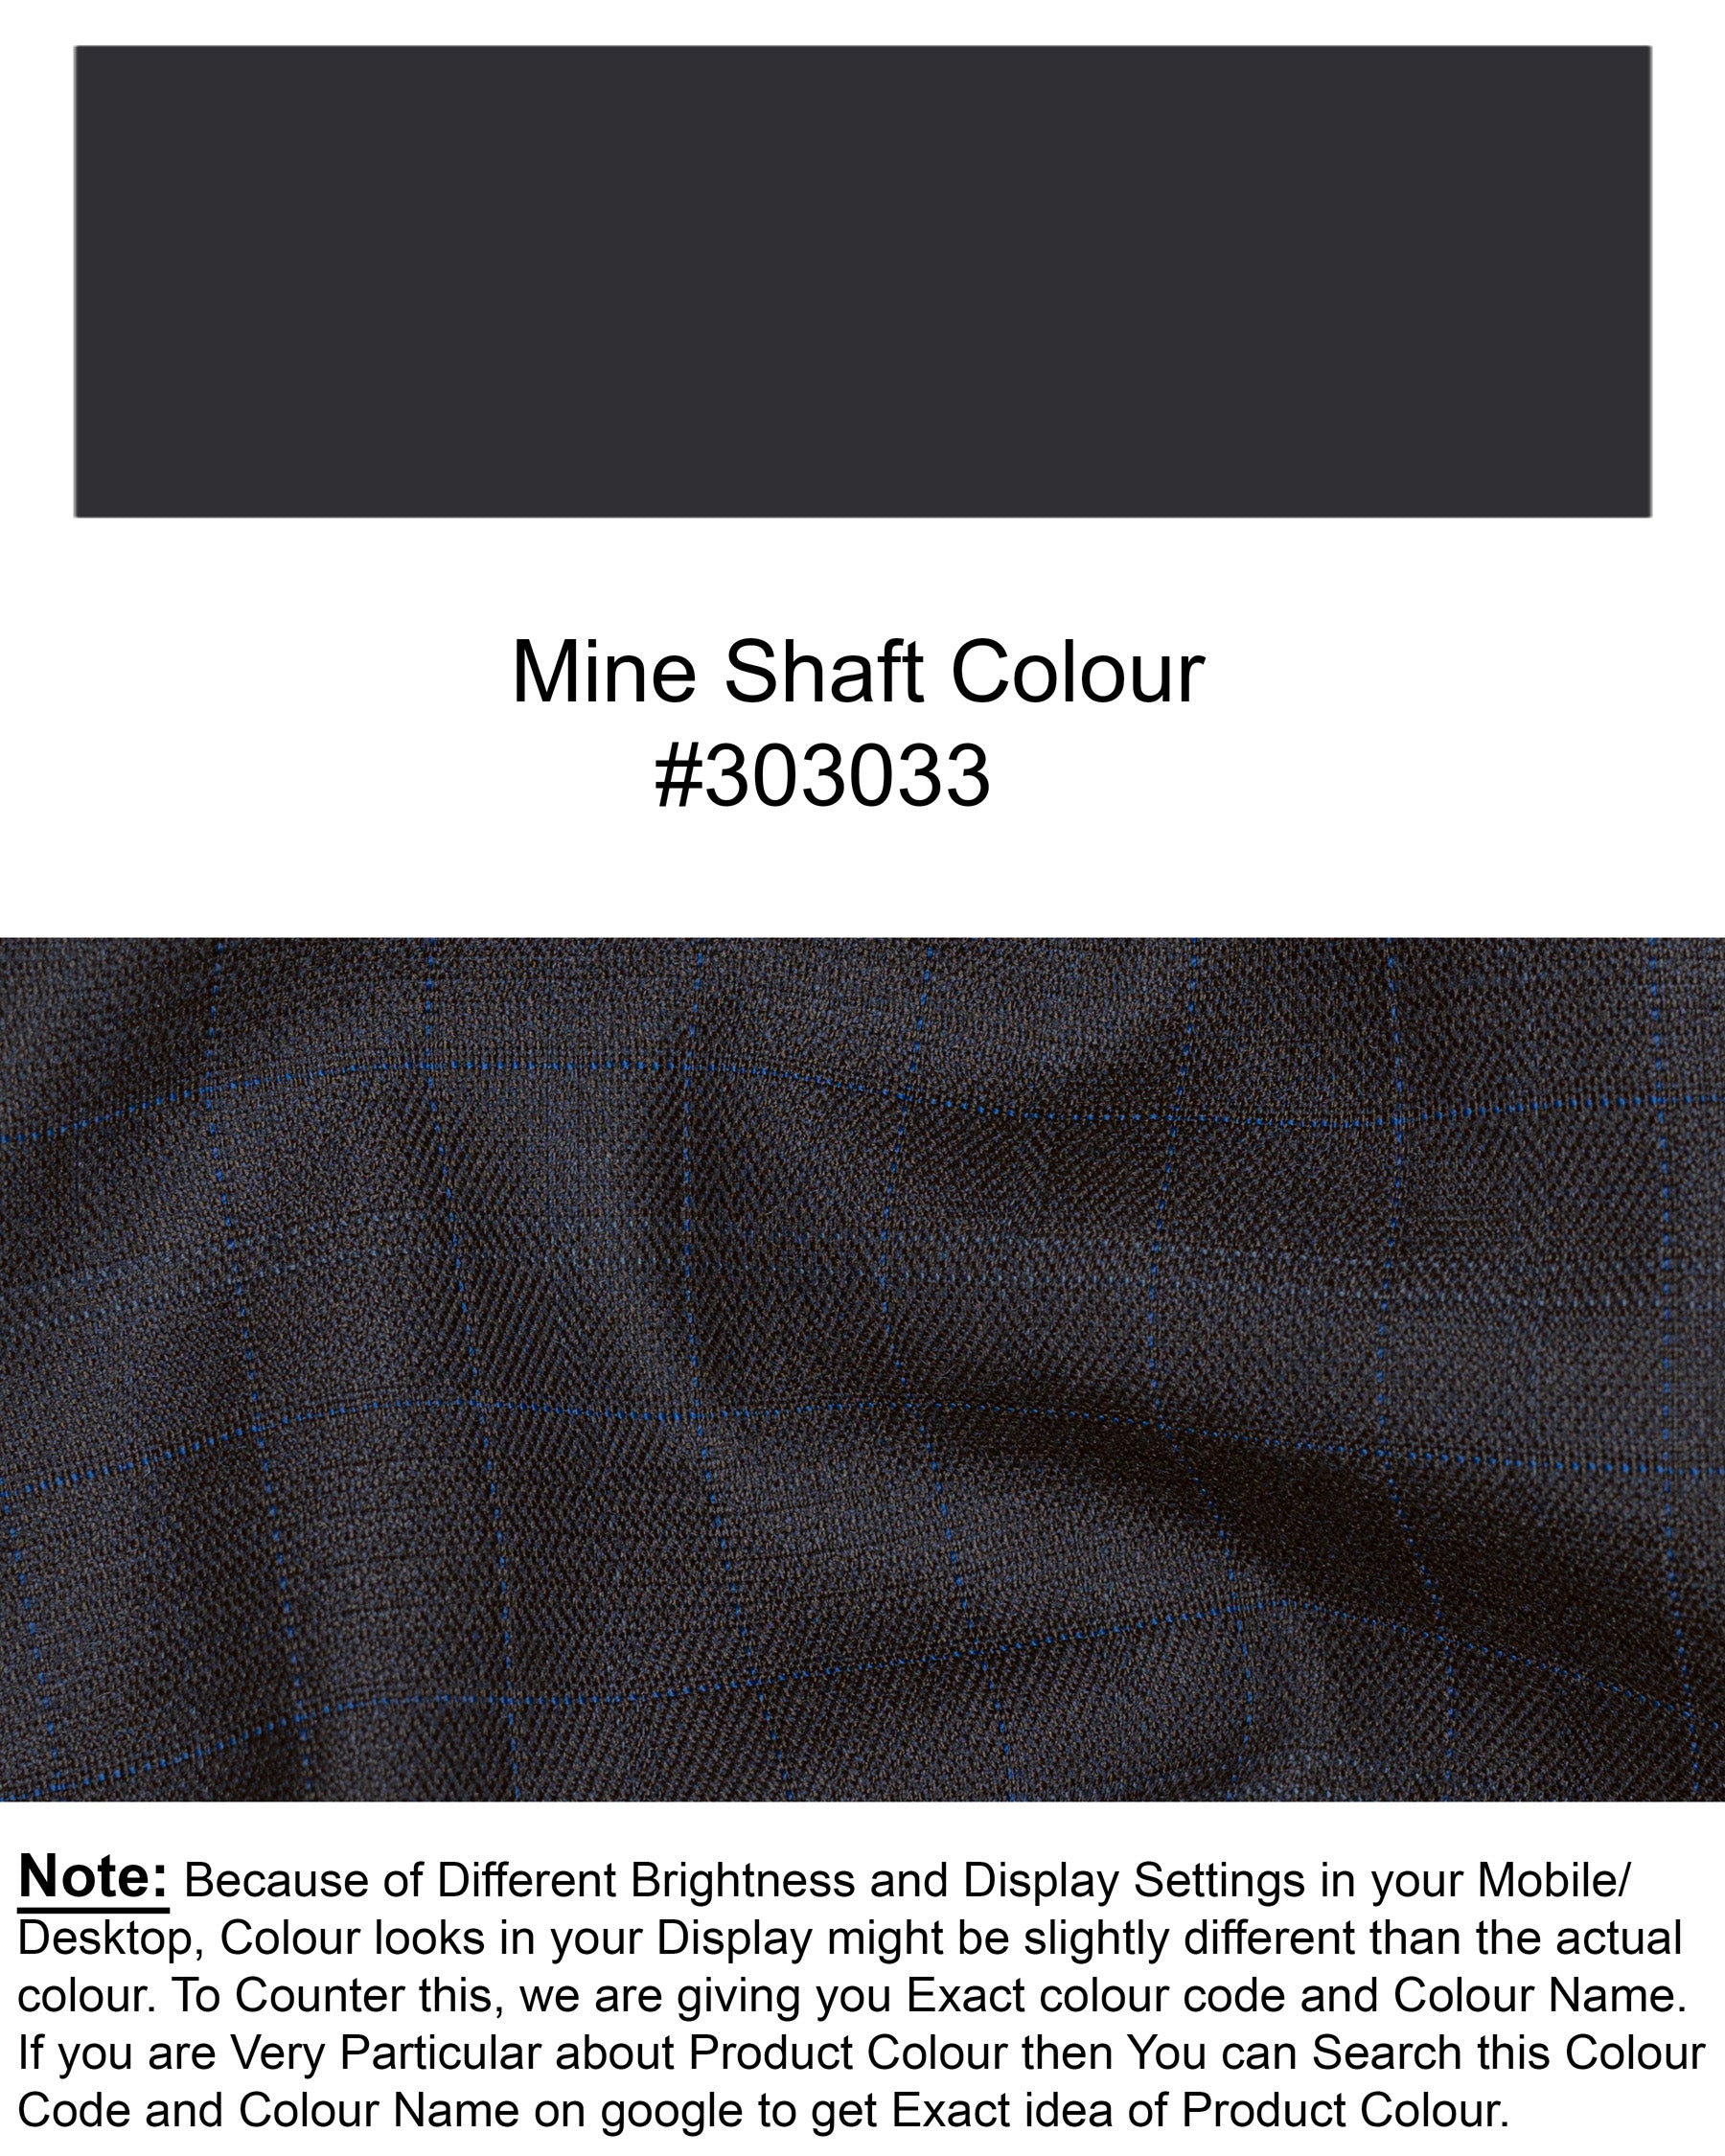 Mine Shaft Grey Plaid Wool Rich Suit ST1422-D24-36, ST1422-D24-38, ST1422-D24-40, ST1422-D24-42, ST1422-D24-44, ST1422-D24-46, ST1422-D24-48, ST1422-D24-50, ST1422-D24-52, ST1422-D24-54, ST1422-D24-56, ST1422-D24-58, ST1422-D24-60